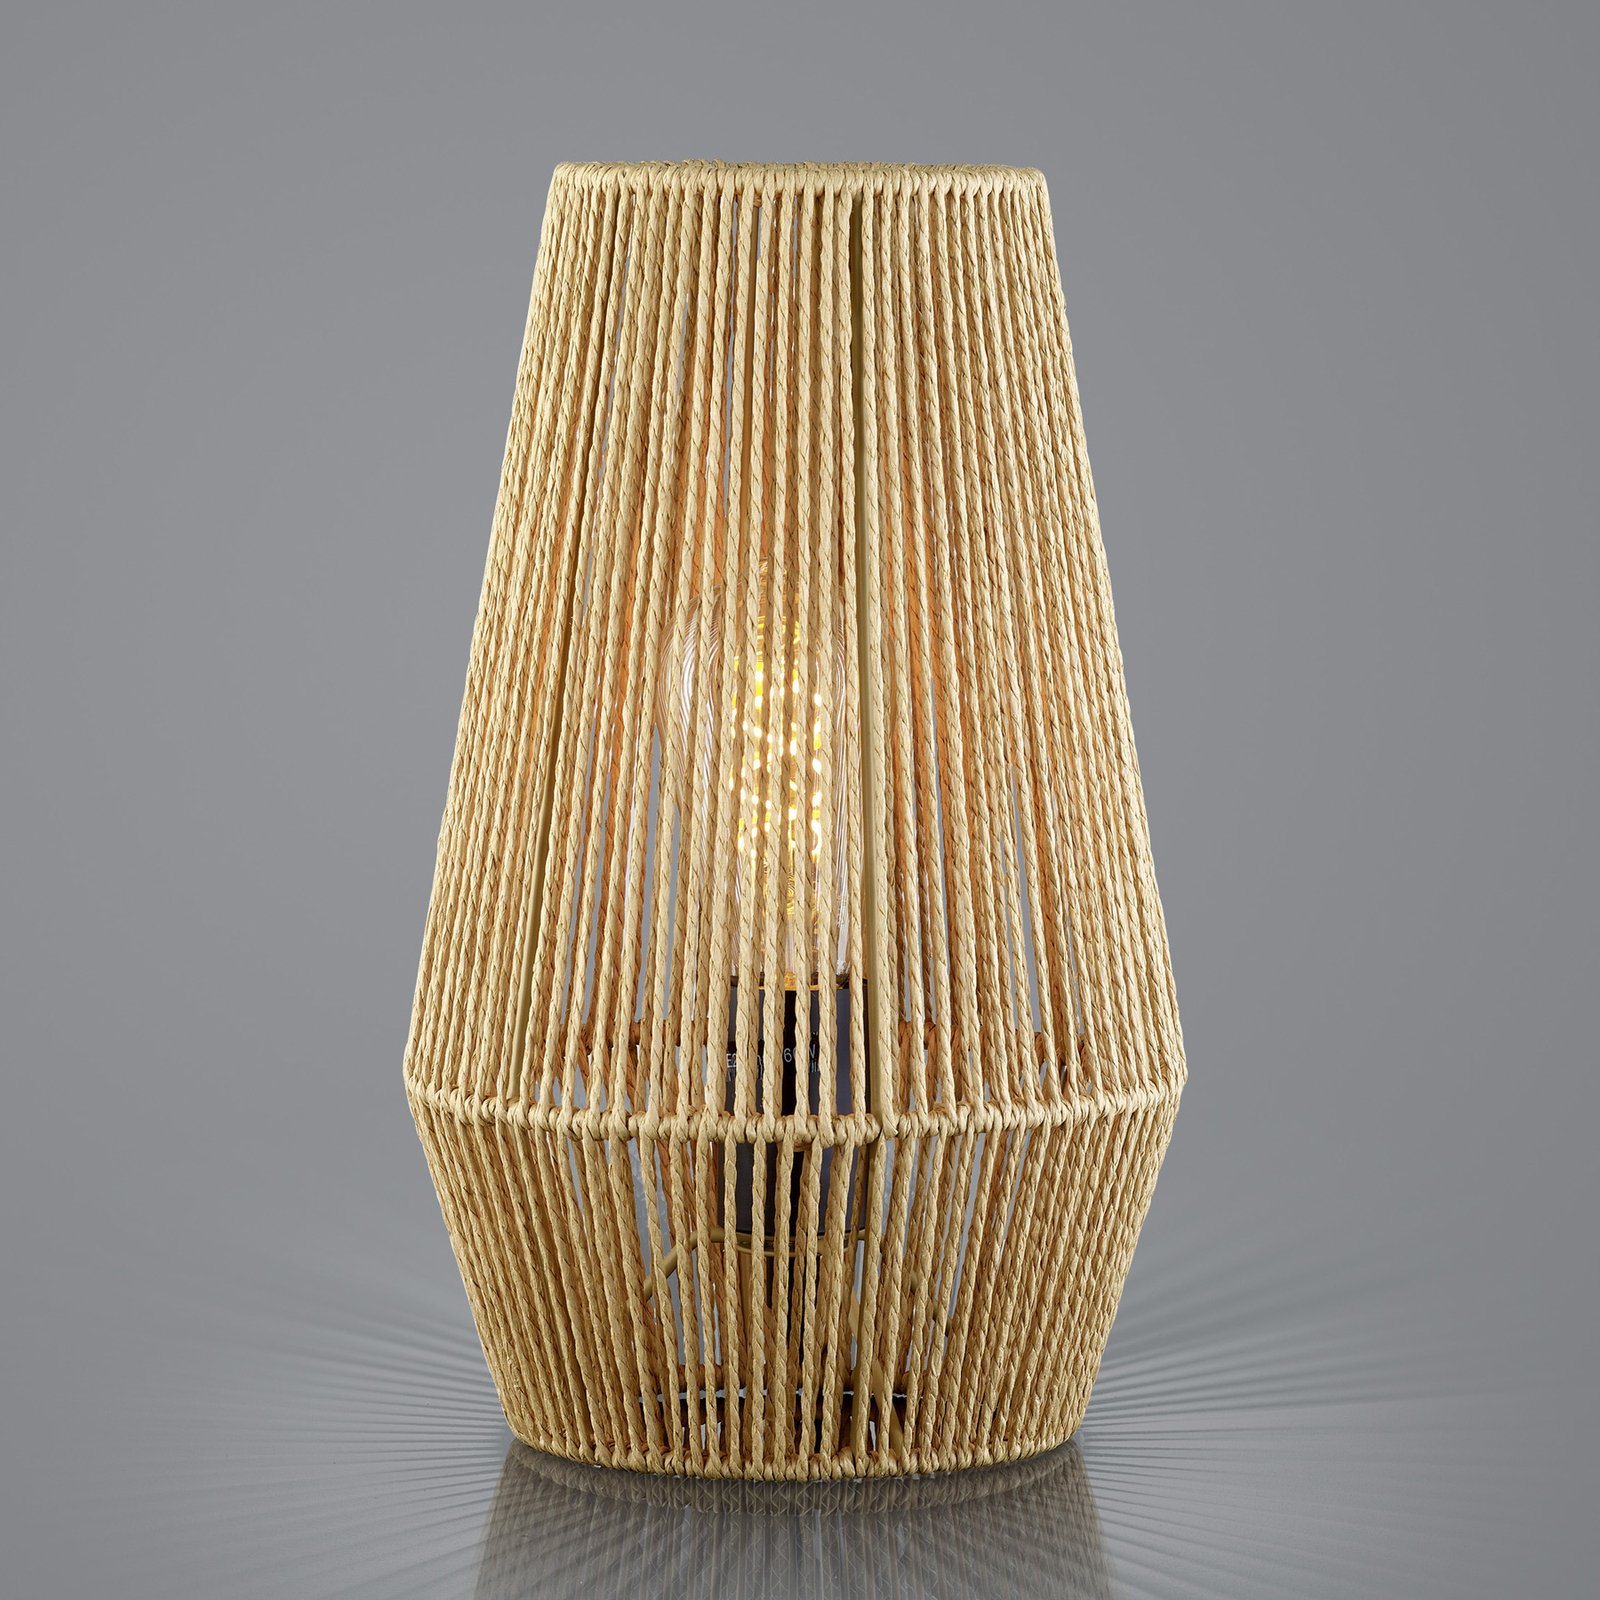 Lanové stolové svietidlo z papiera, hnedé, Ø 20 cm